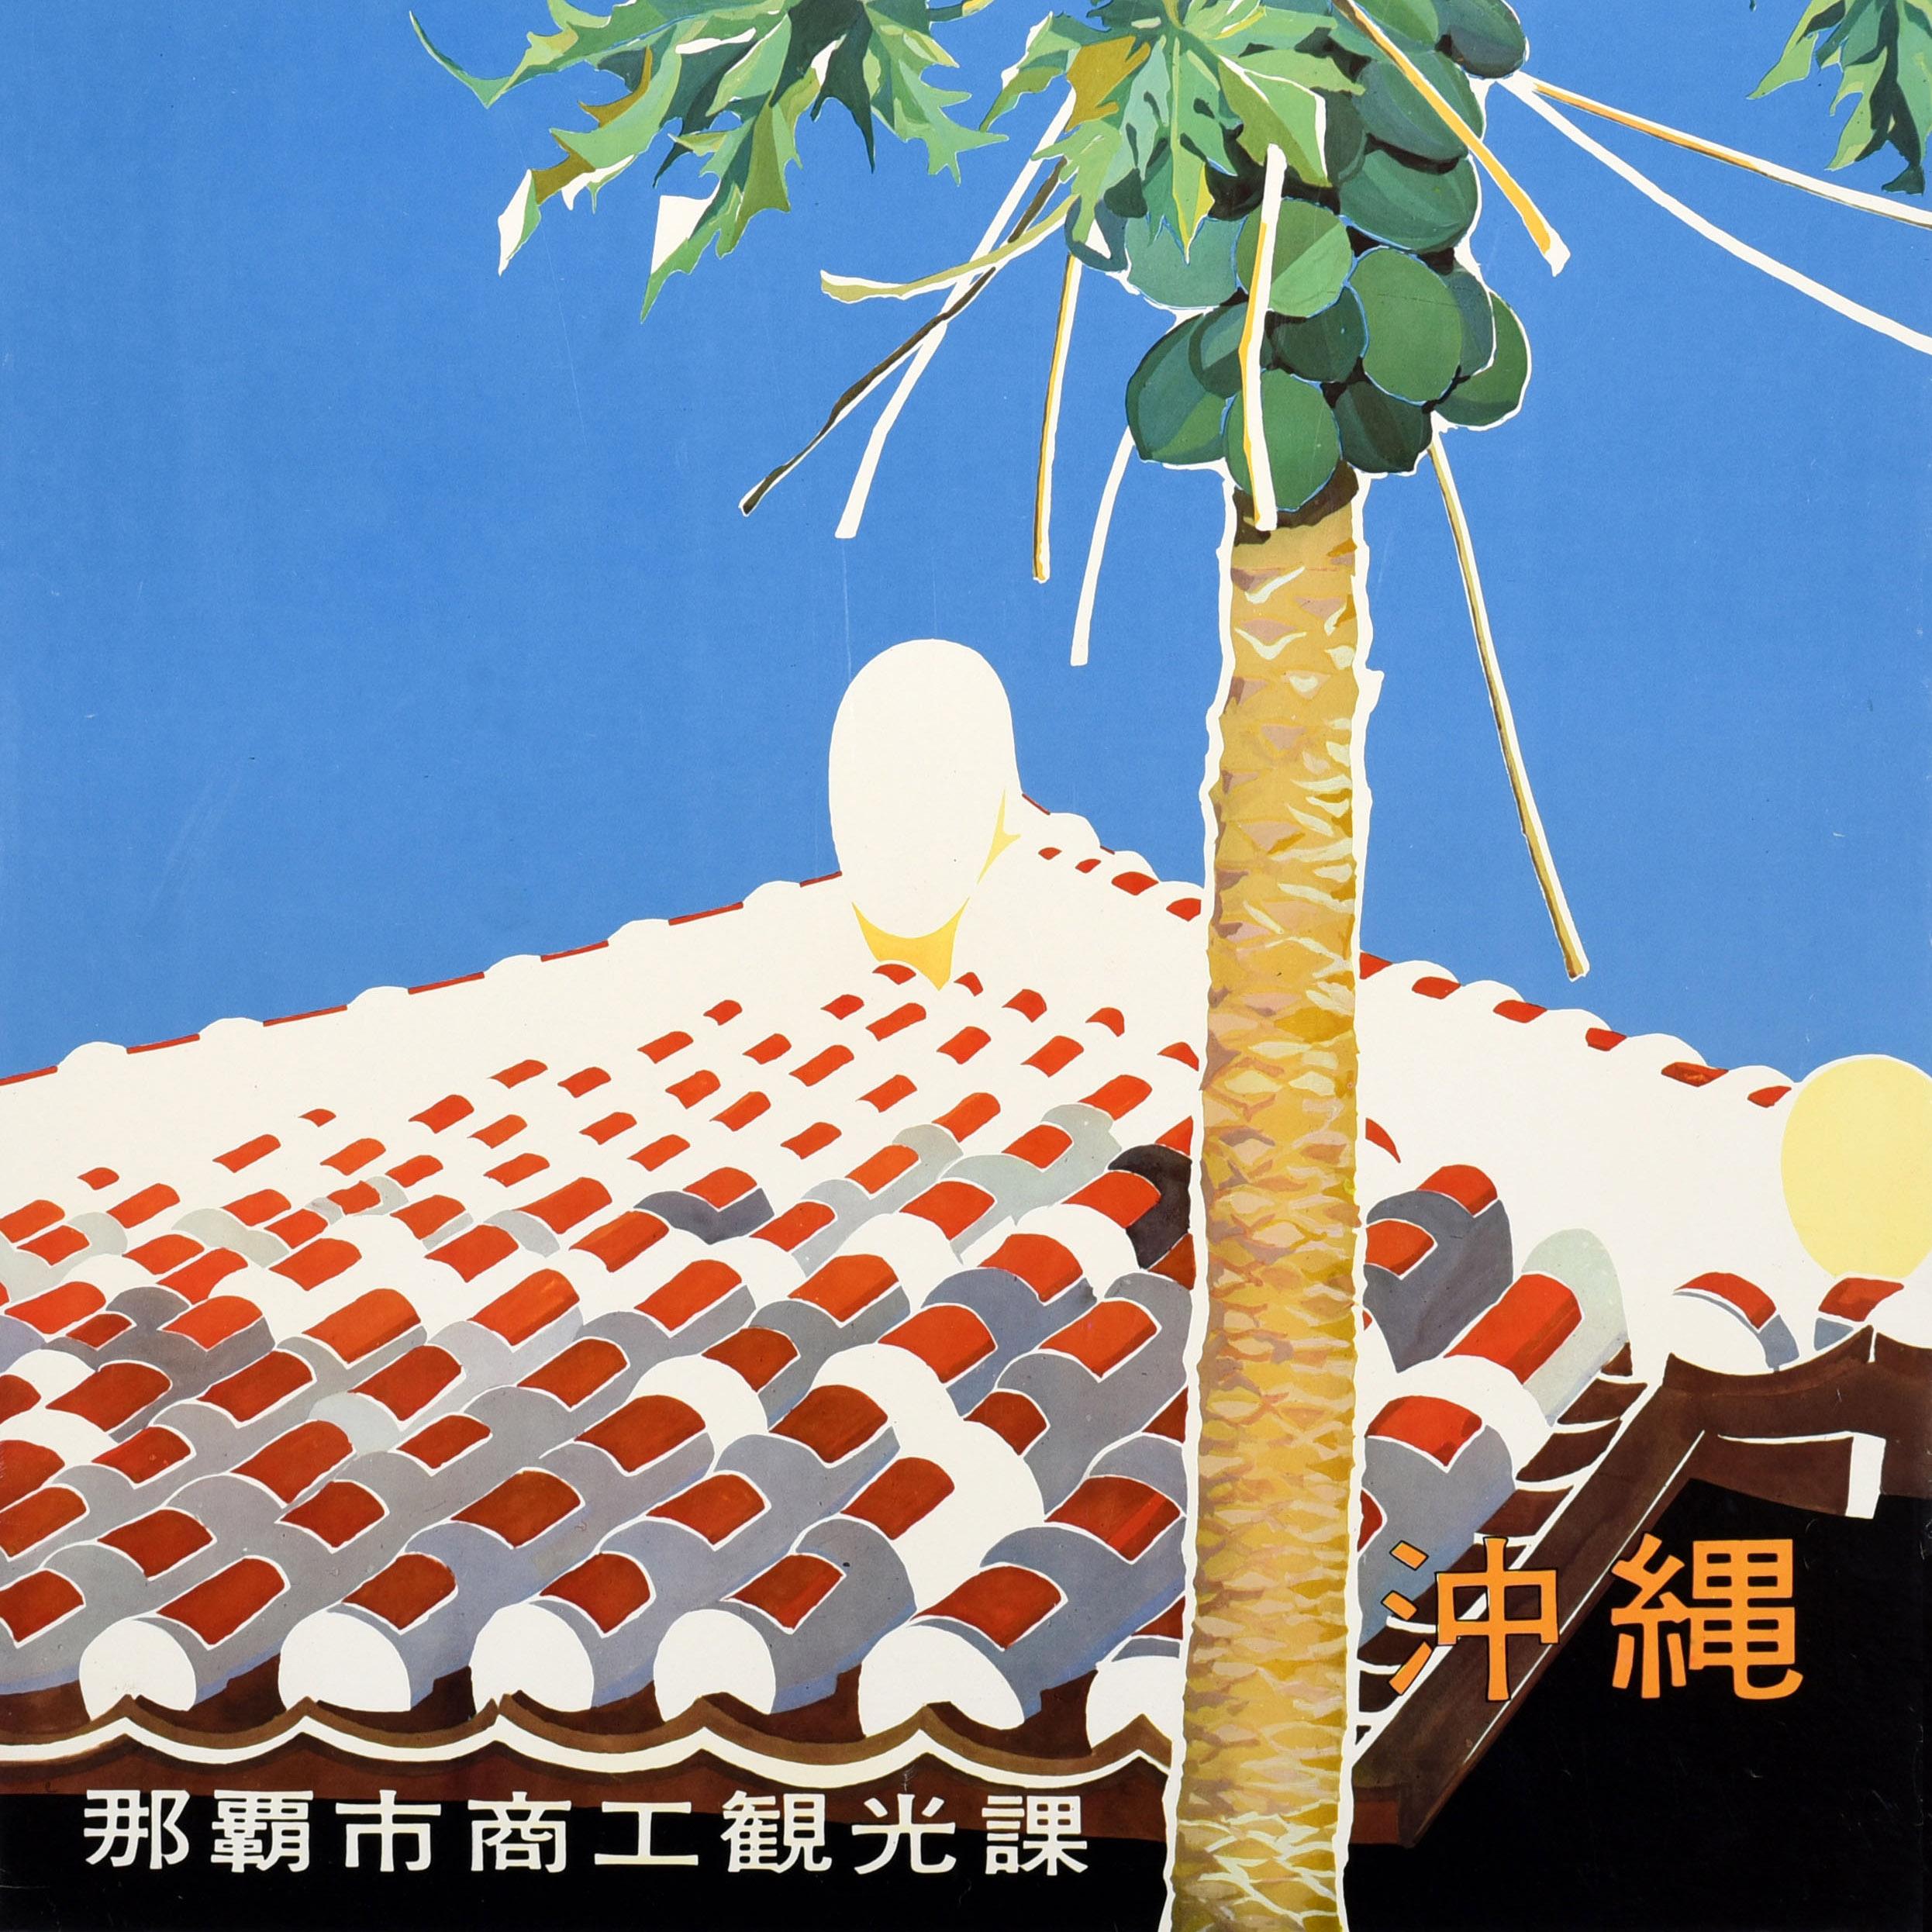 Original-Japan-Reiseplakat für Okinawa 沖縄, herausgegeben von der Naha City Commerce and Tourism Division, mit einem großartigen Design, das die roten und weißen Dachziegel des historischen Shuri-Schlosses mit einem Baum im Vordergrund vor einem